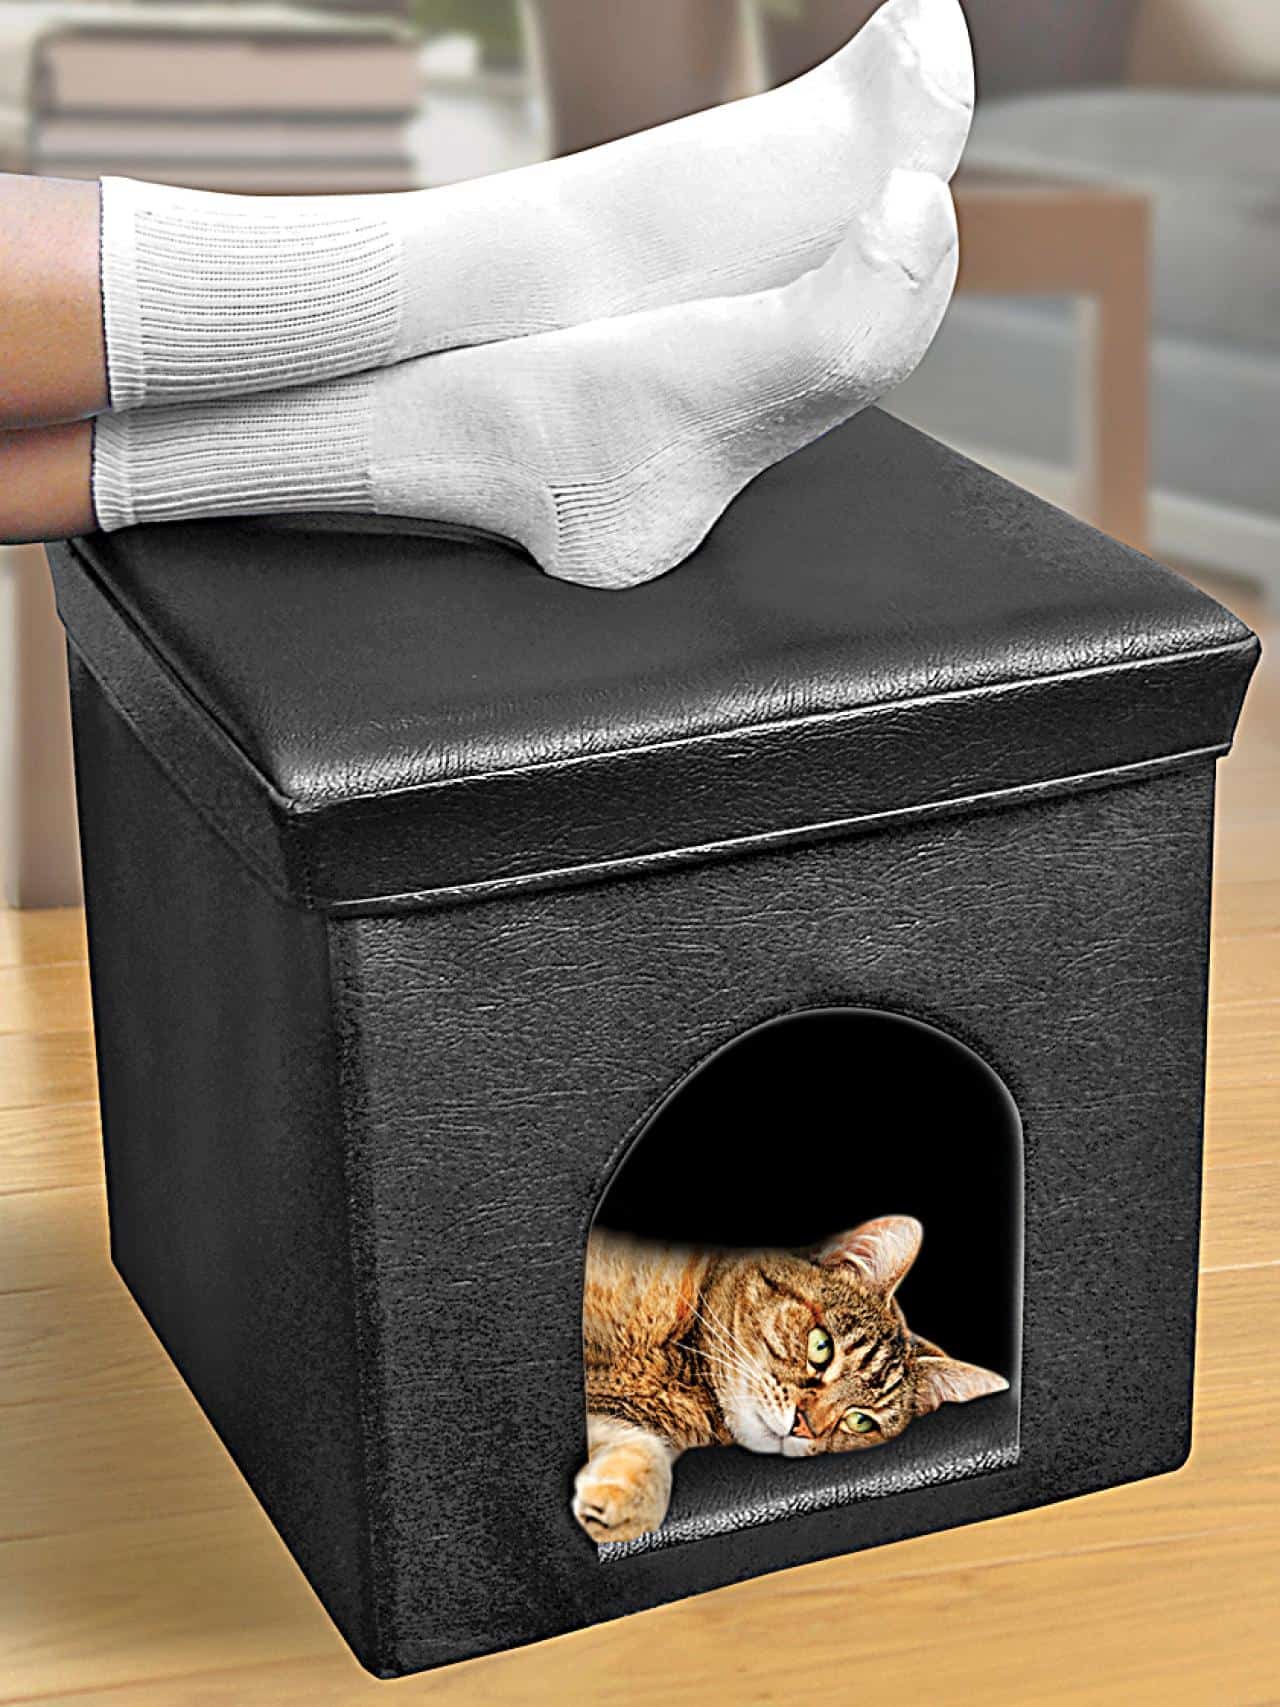 Diy cat house foot stool